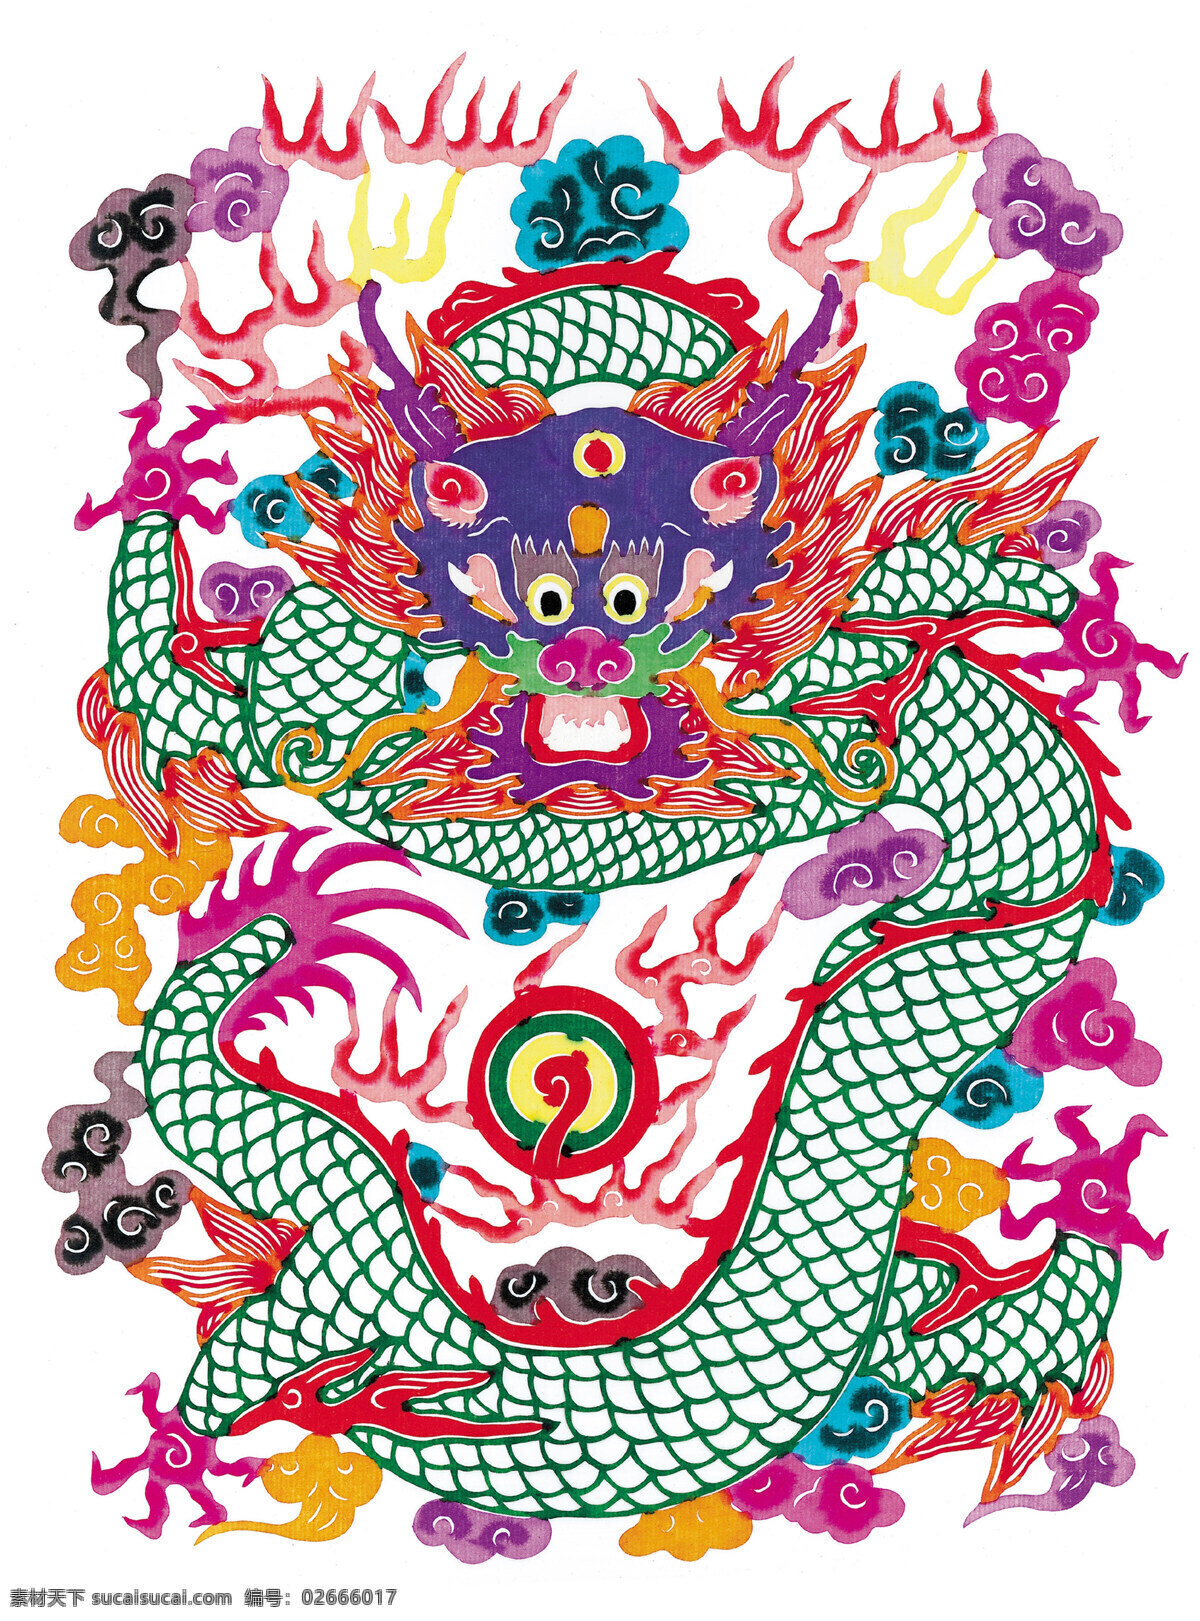 十二生肖 龙剪纸 龙造型剪纸 火球 火焰 浮云装饰 运用年画色彩 剪纸表现 剪纸 传统文化 文化艺术